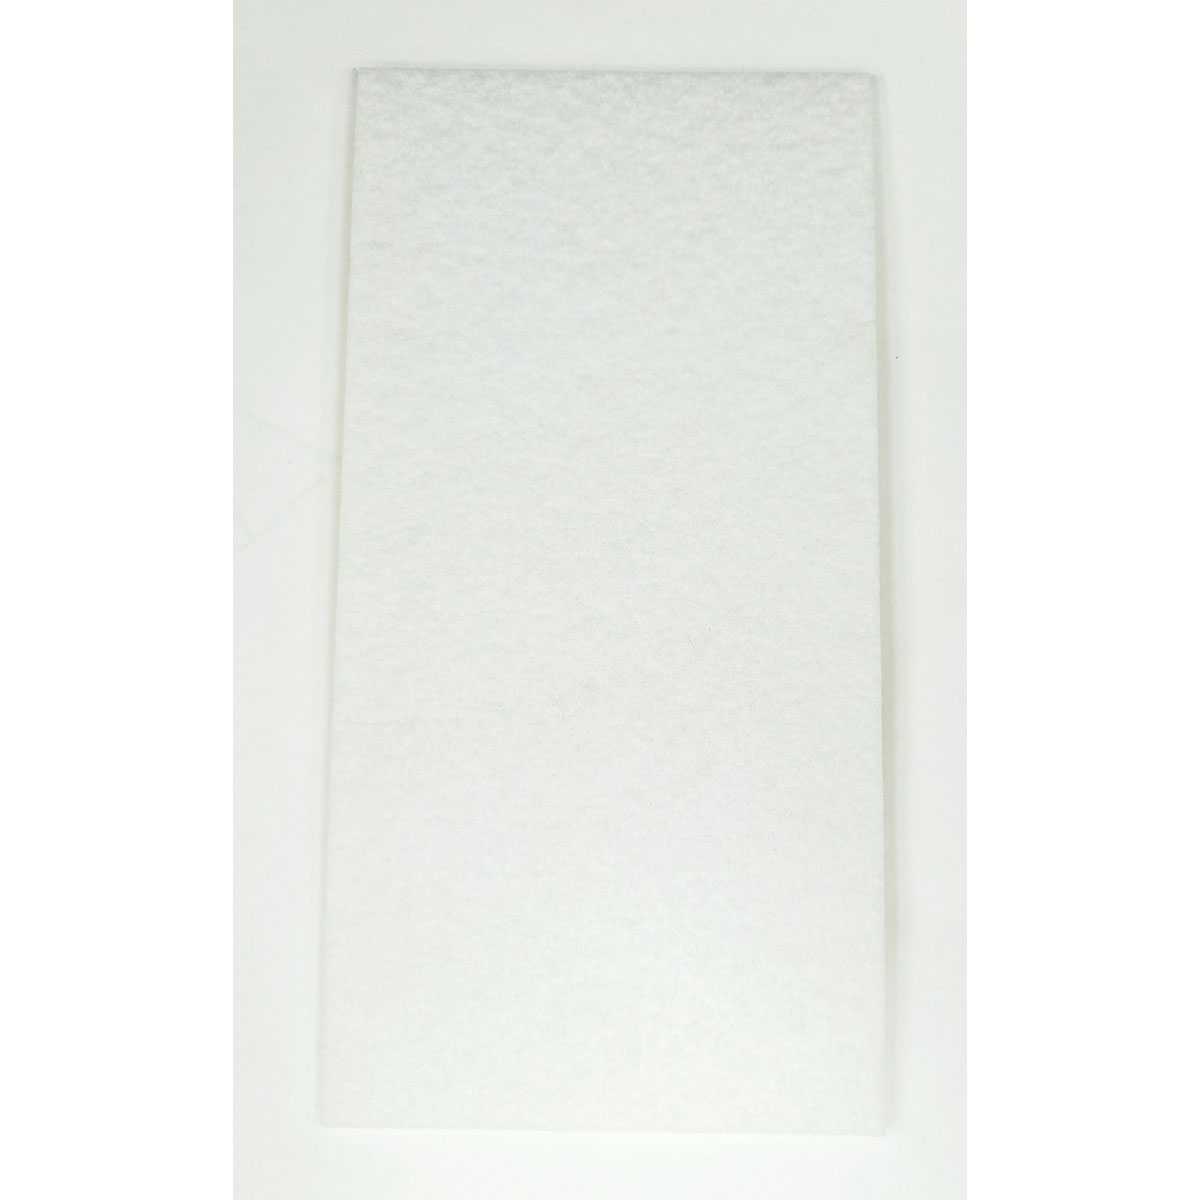 Filzgleiter eckig, 100 x 200 mm, weiß, selbstklebend, 2